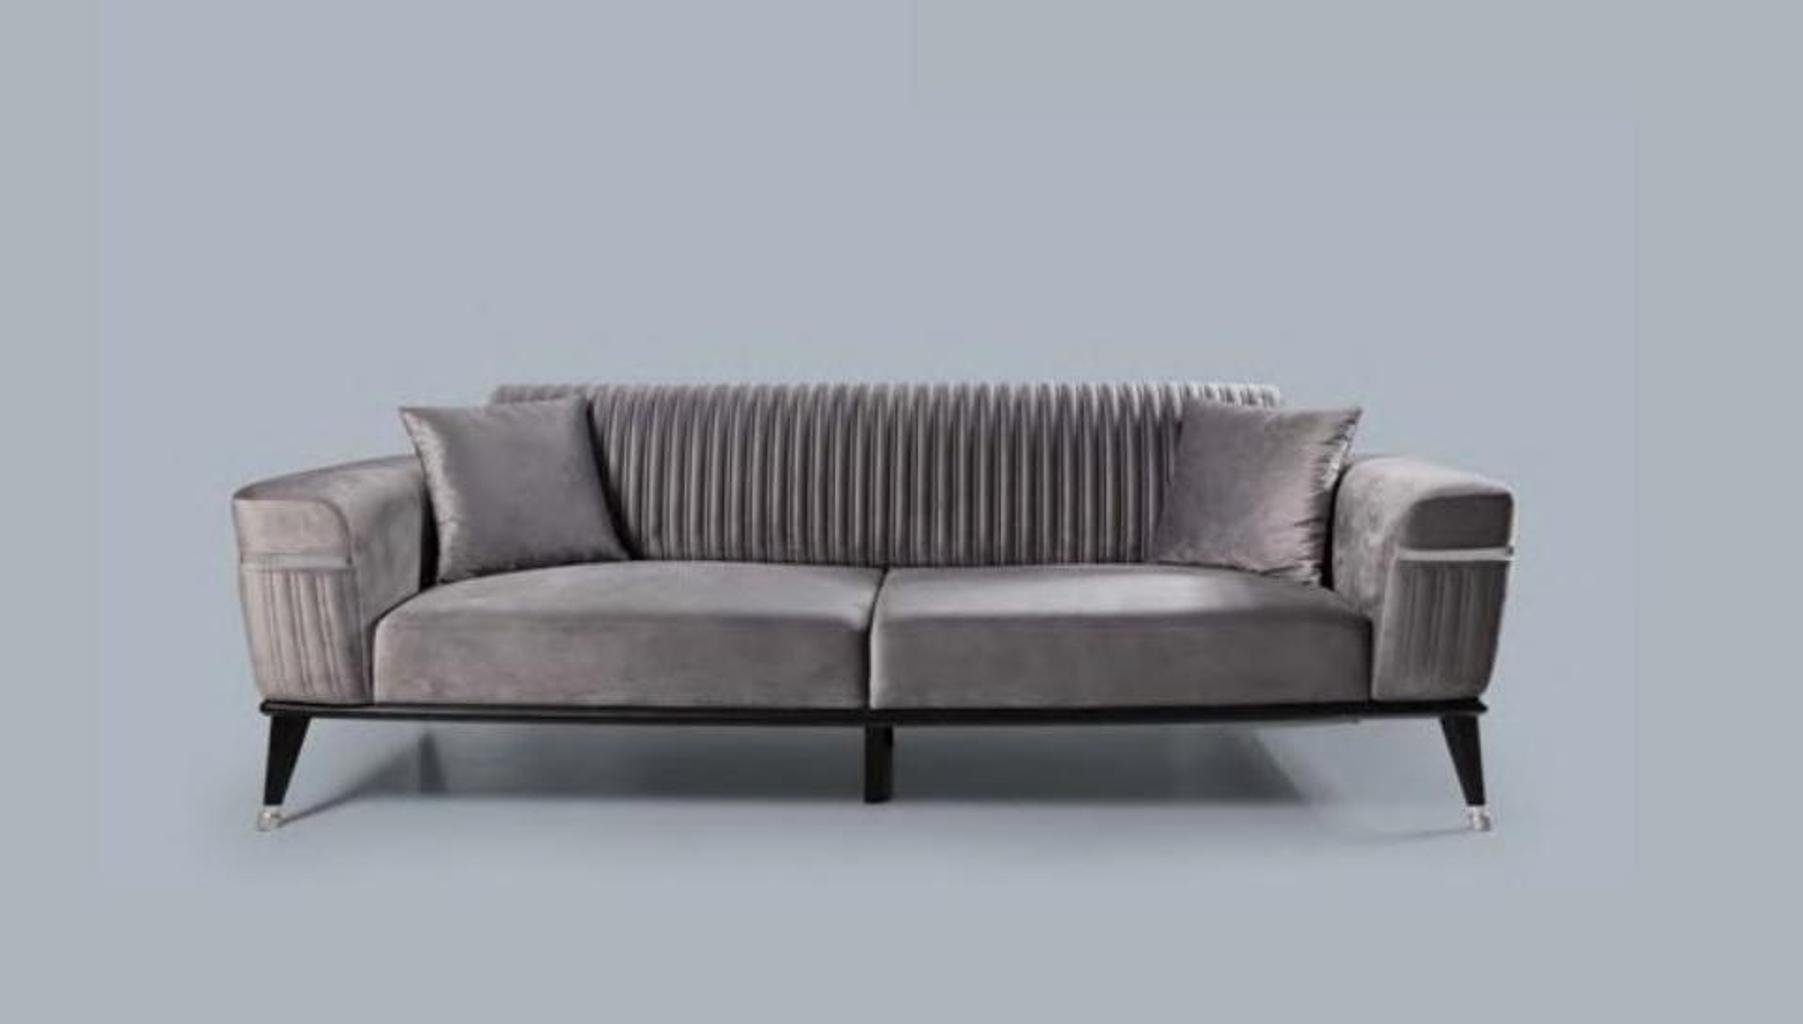 JVmoebel Sofa Luxus Graue Couch Europe Made Couchen Sofa Wohnzimmer Grau, in Möbel